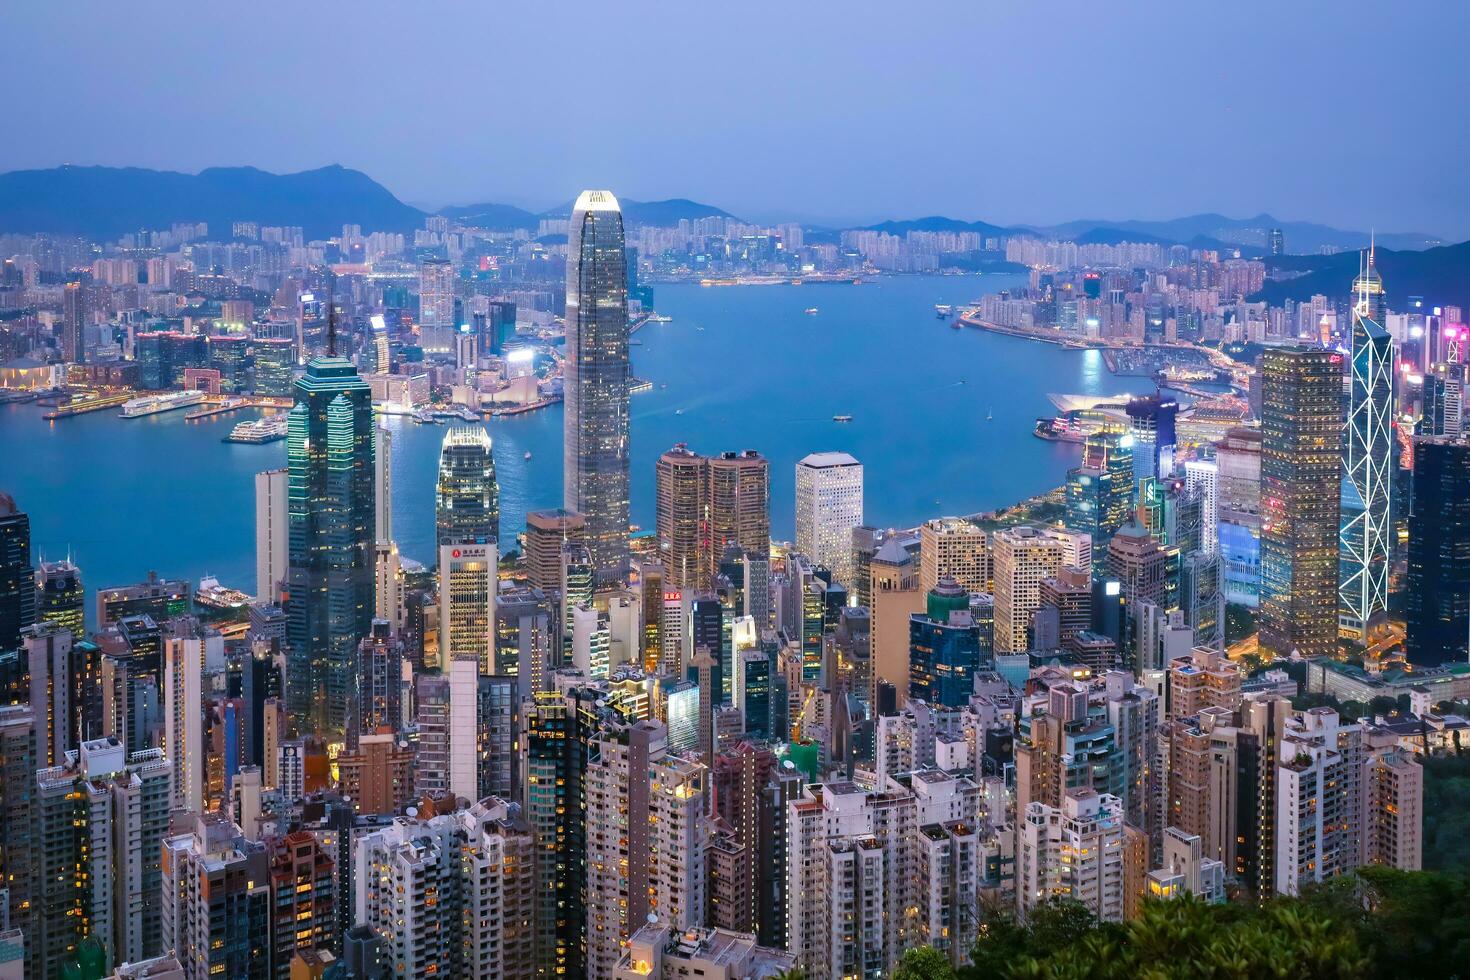 Hong Kong modern city in China 24970213 Stock Photo at Vecteezy